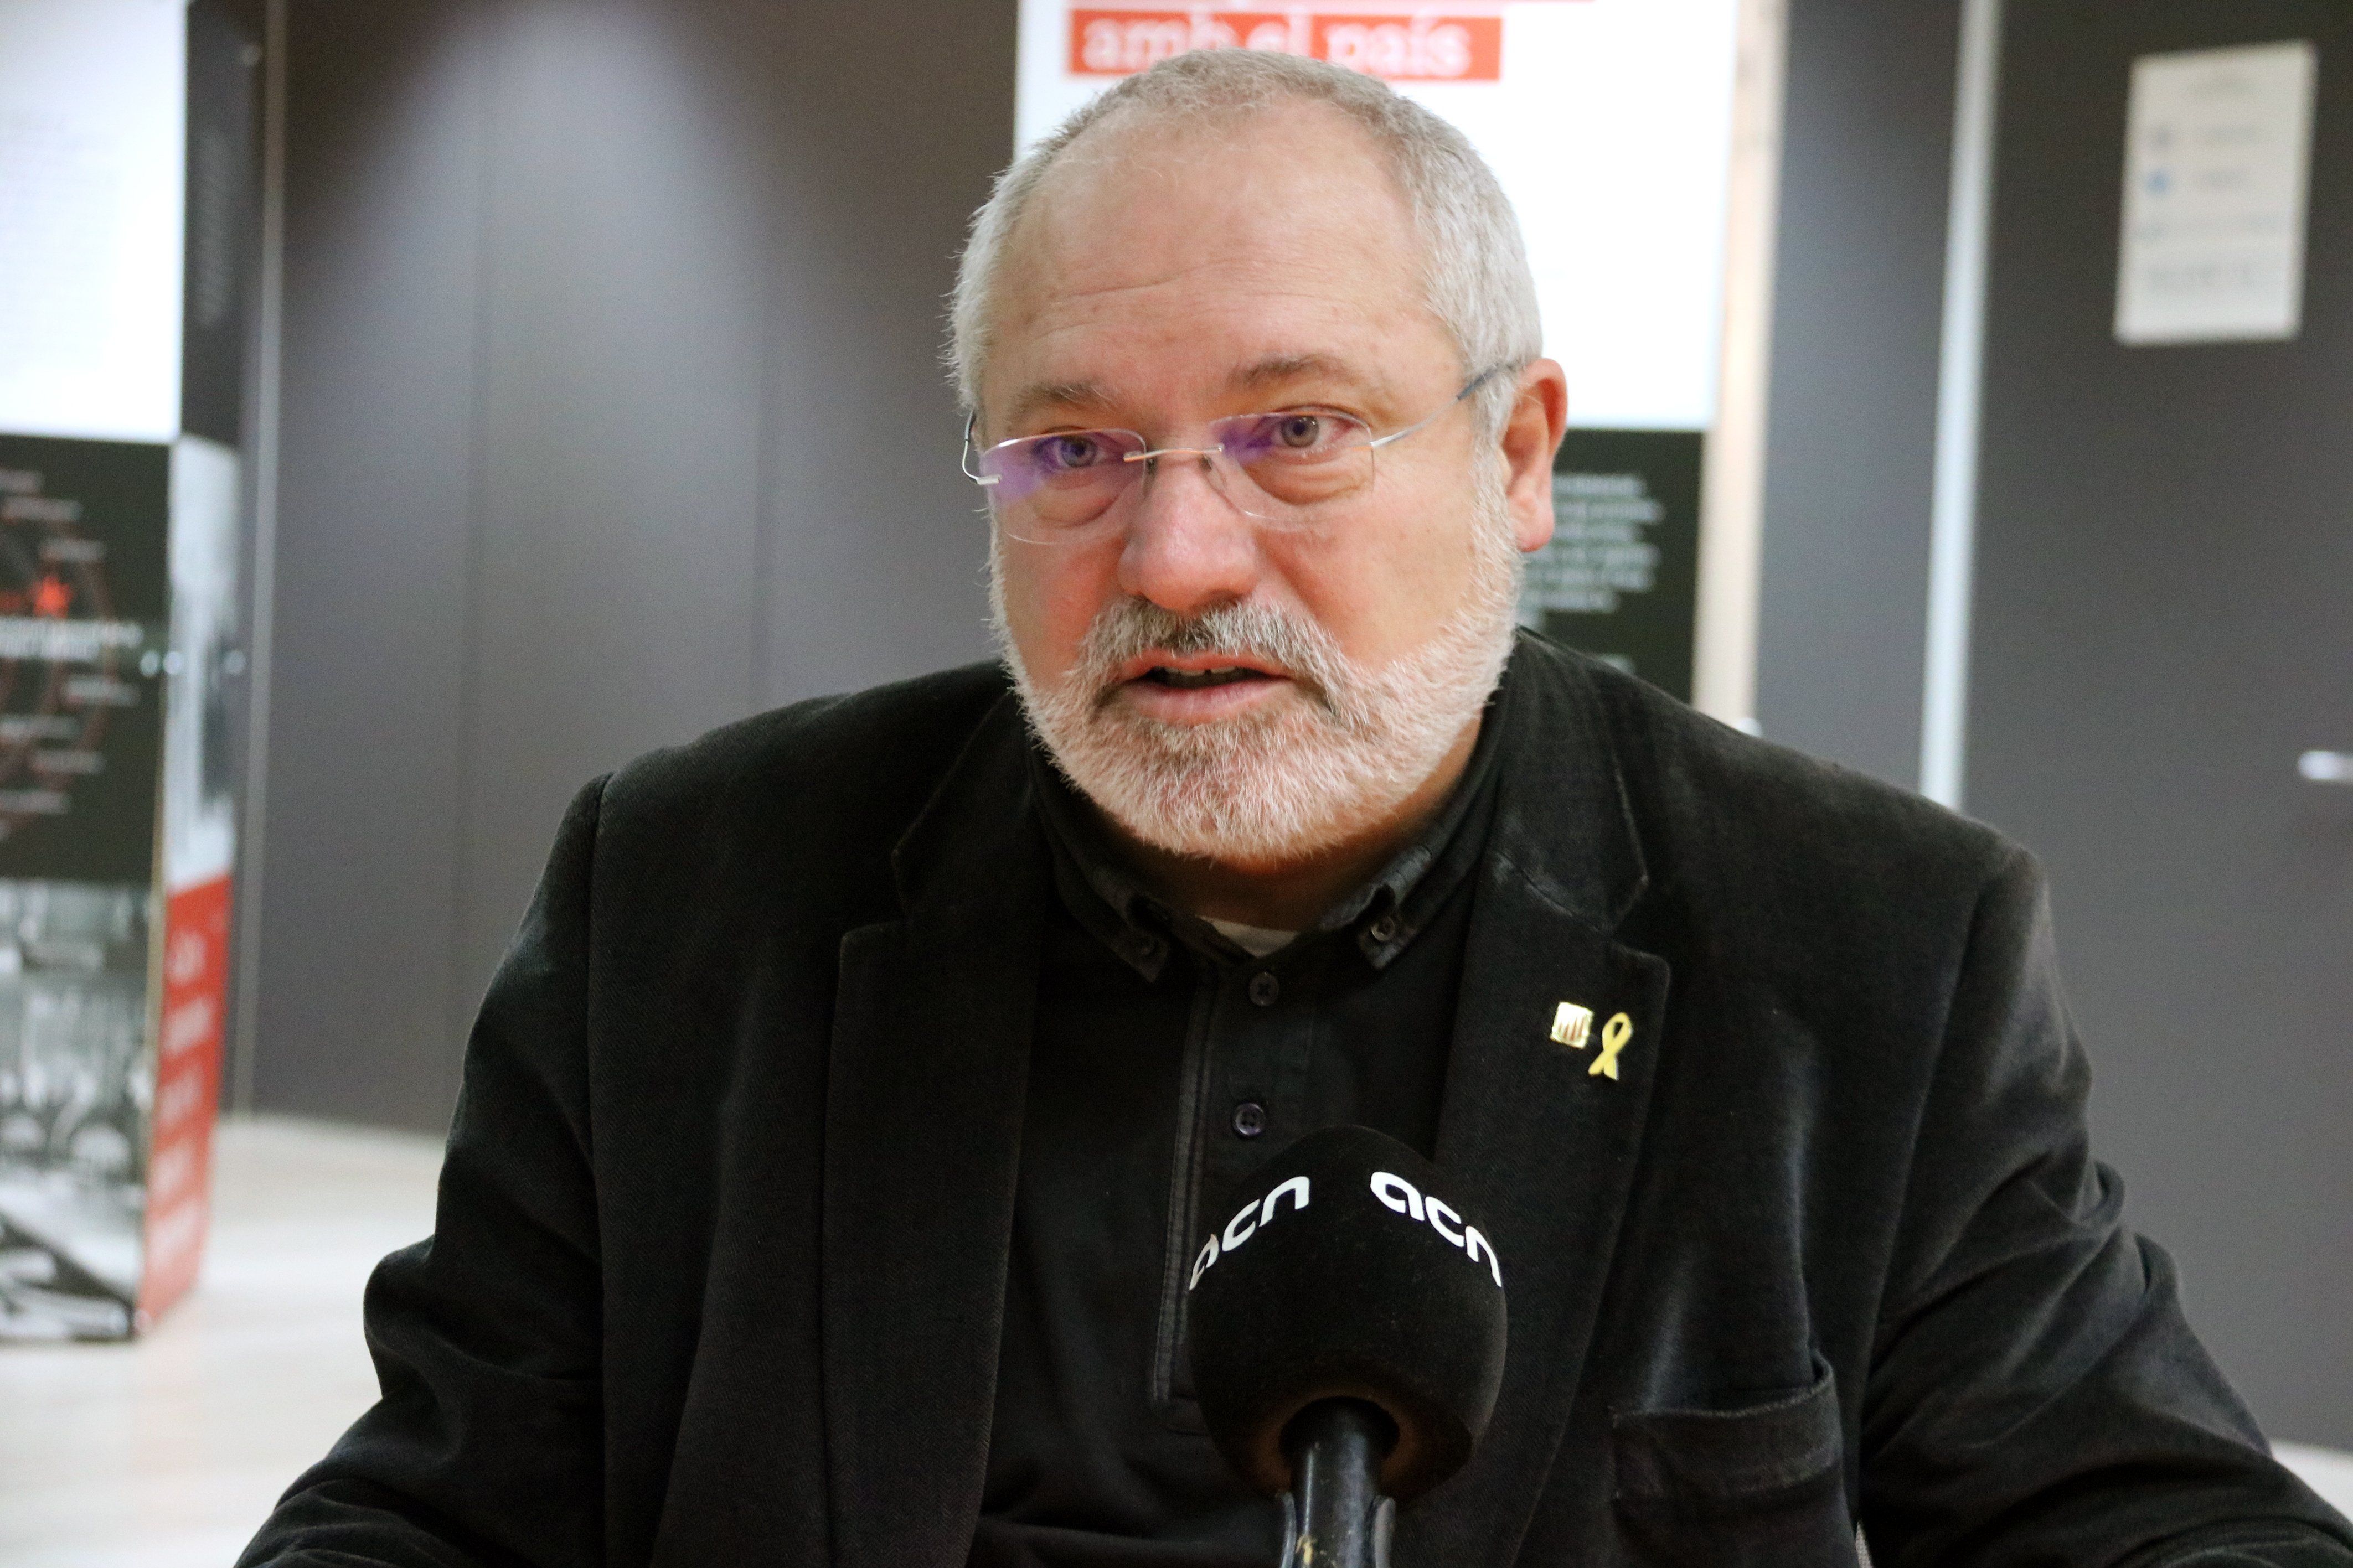 El conseller Puig, cridat com a suplent a una mesa electoral el 26-M